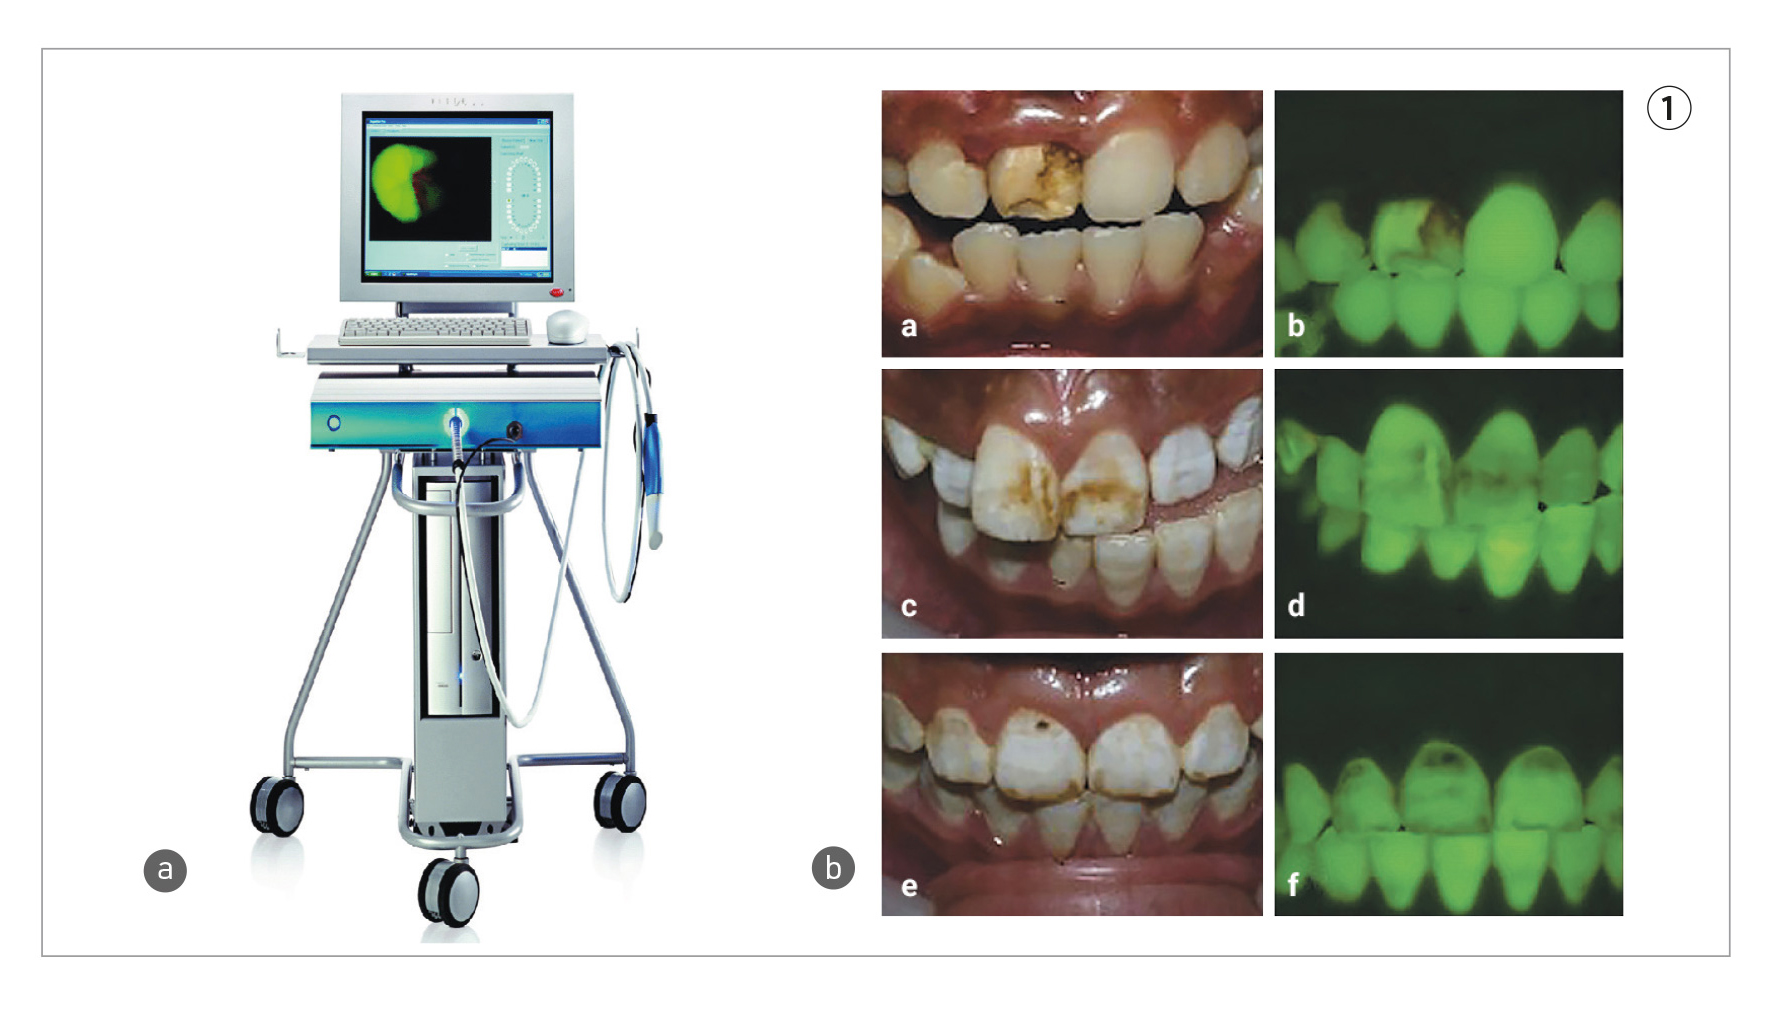 Macchinario Qray e immagine clinica del paziente con e senza fluorescenza 